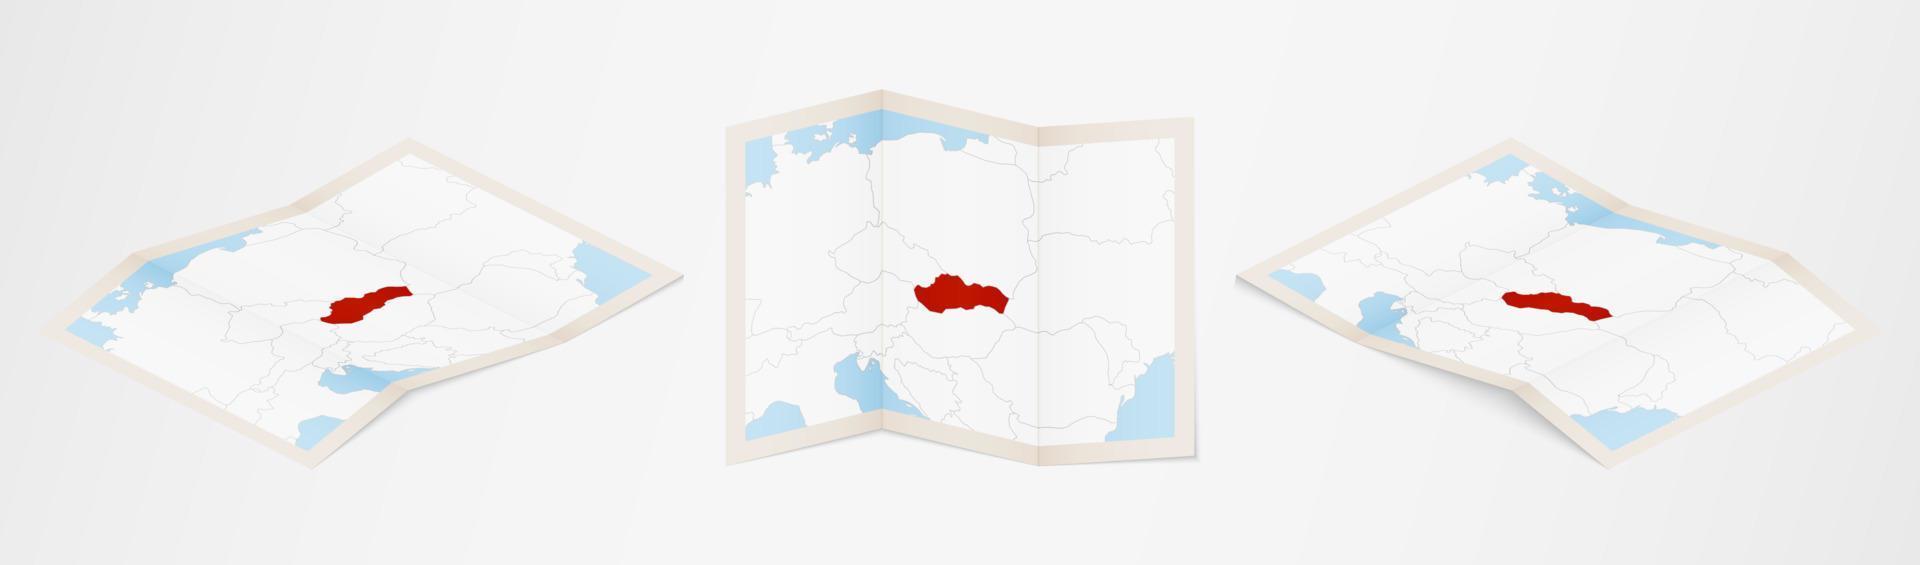 mapa dobrado da eslováquia em três versões diferentes. vetor